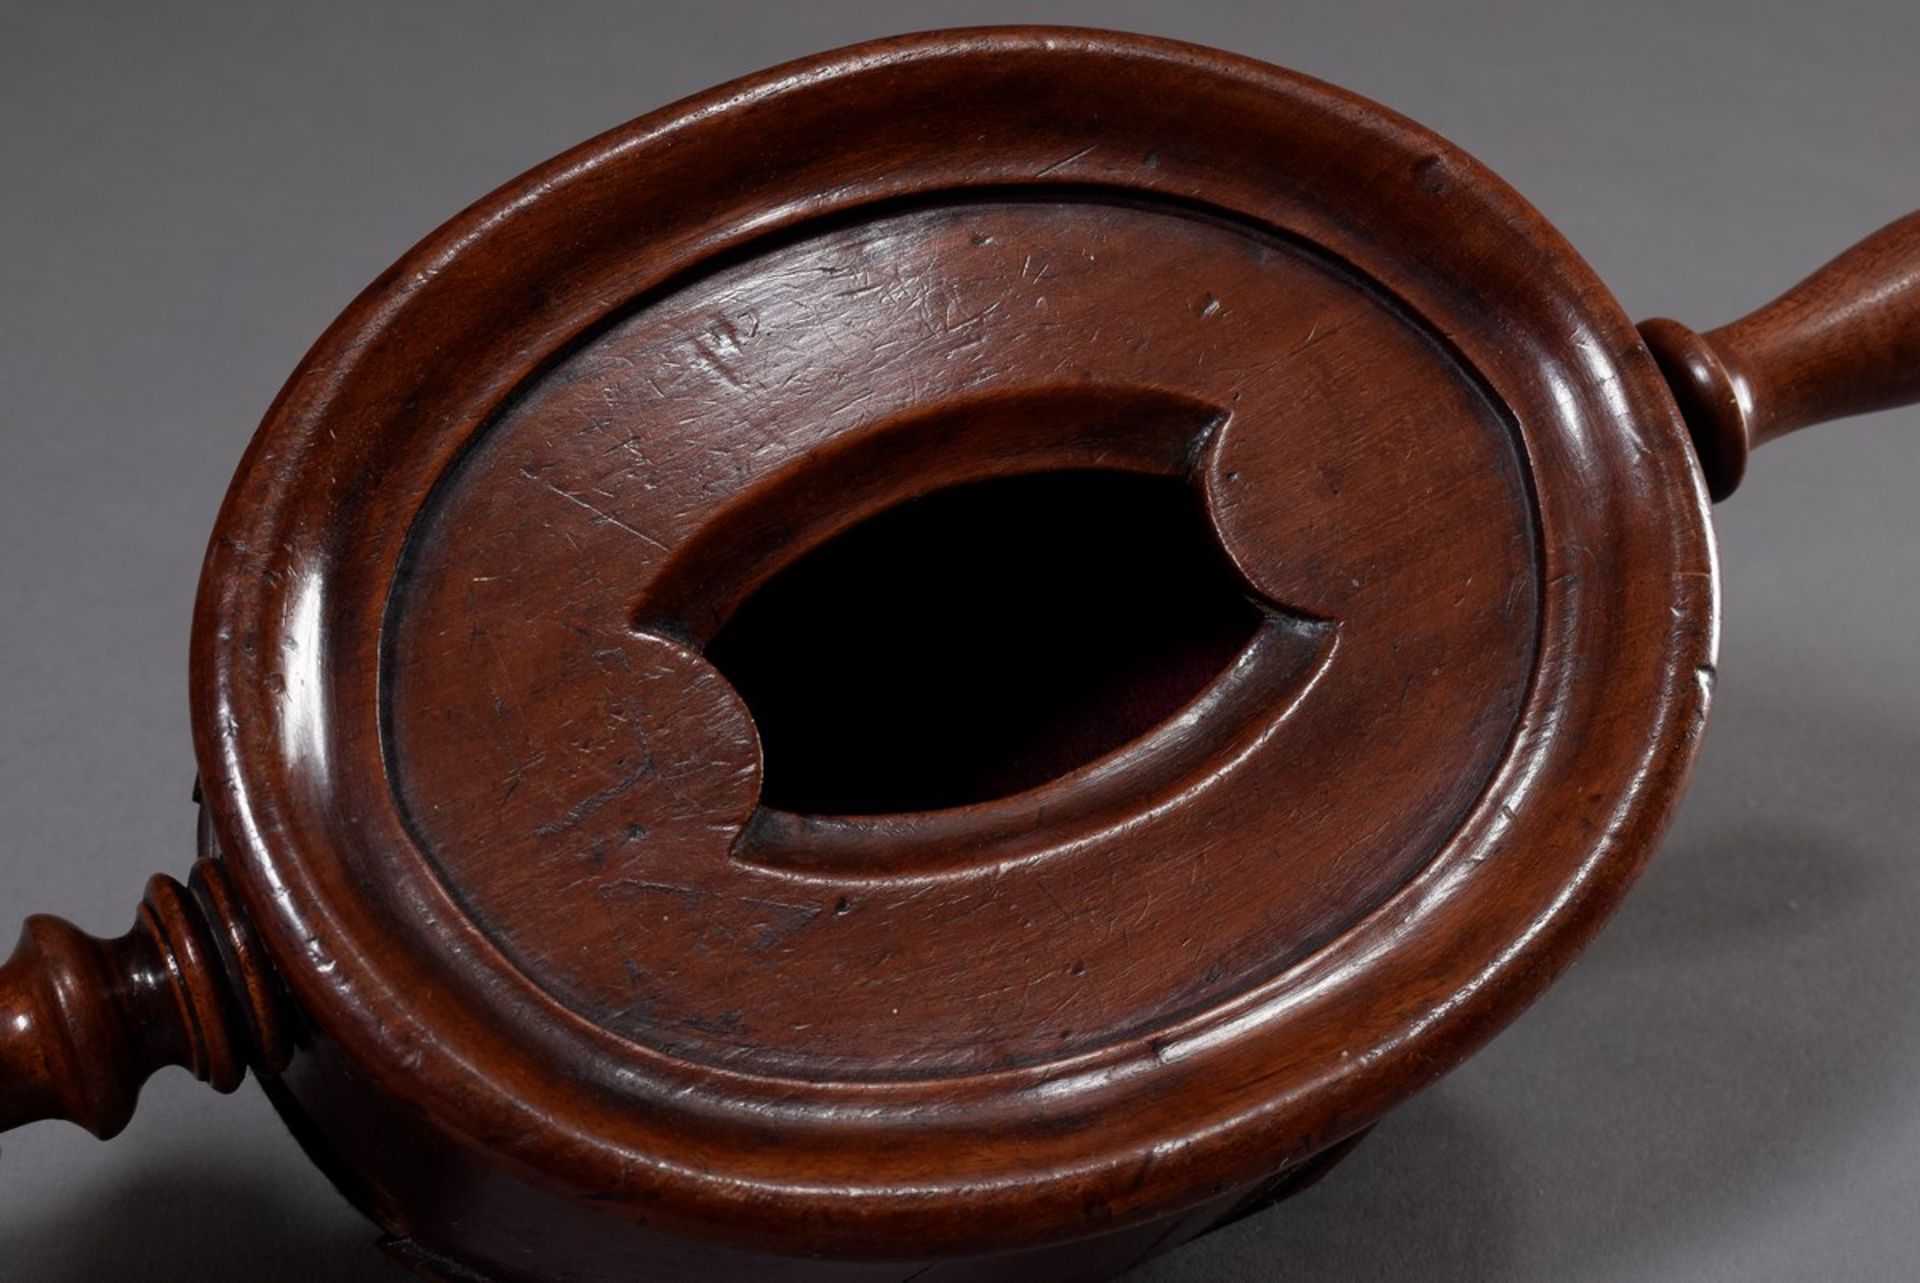 Ovale Kollektenbüchse mit gedrechselten Griffen, rötlich gebeiztes Holz, um 1900, 7,5x36x14,5cm, - Bild 3 aus 4